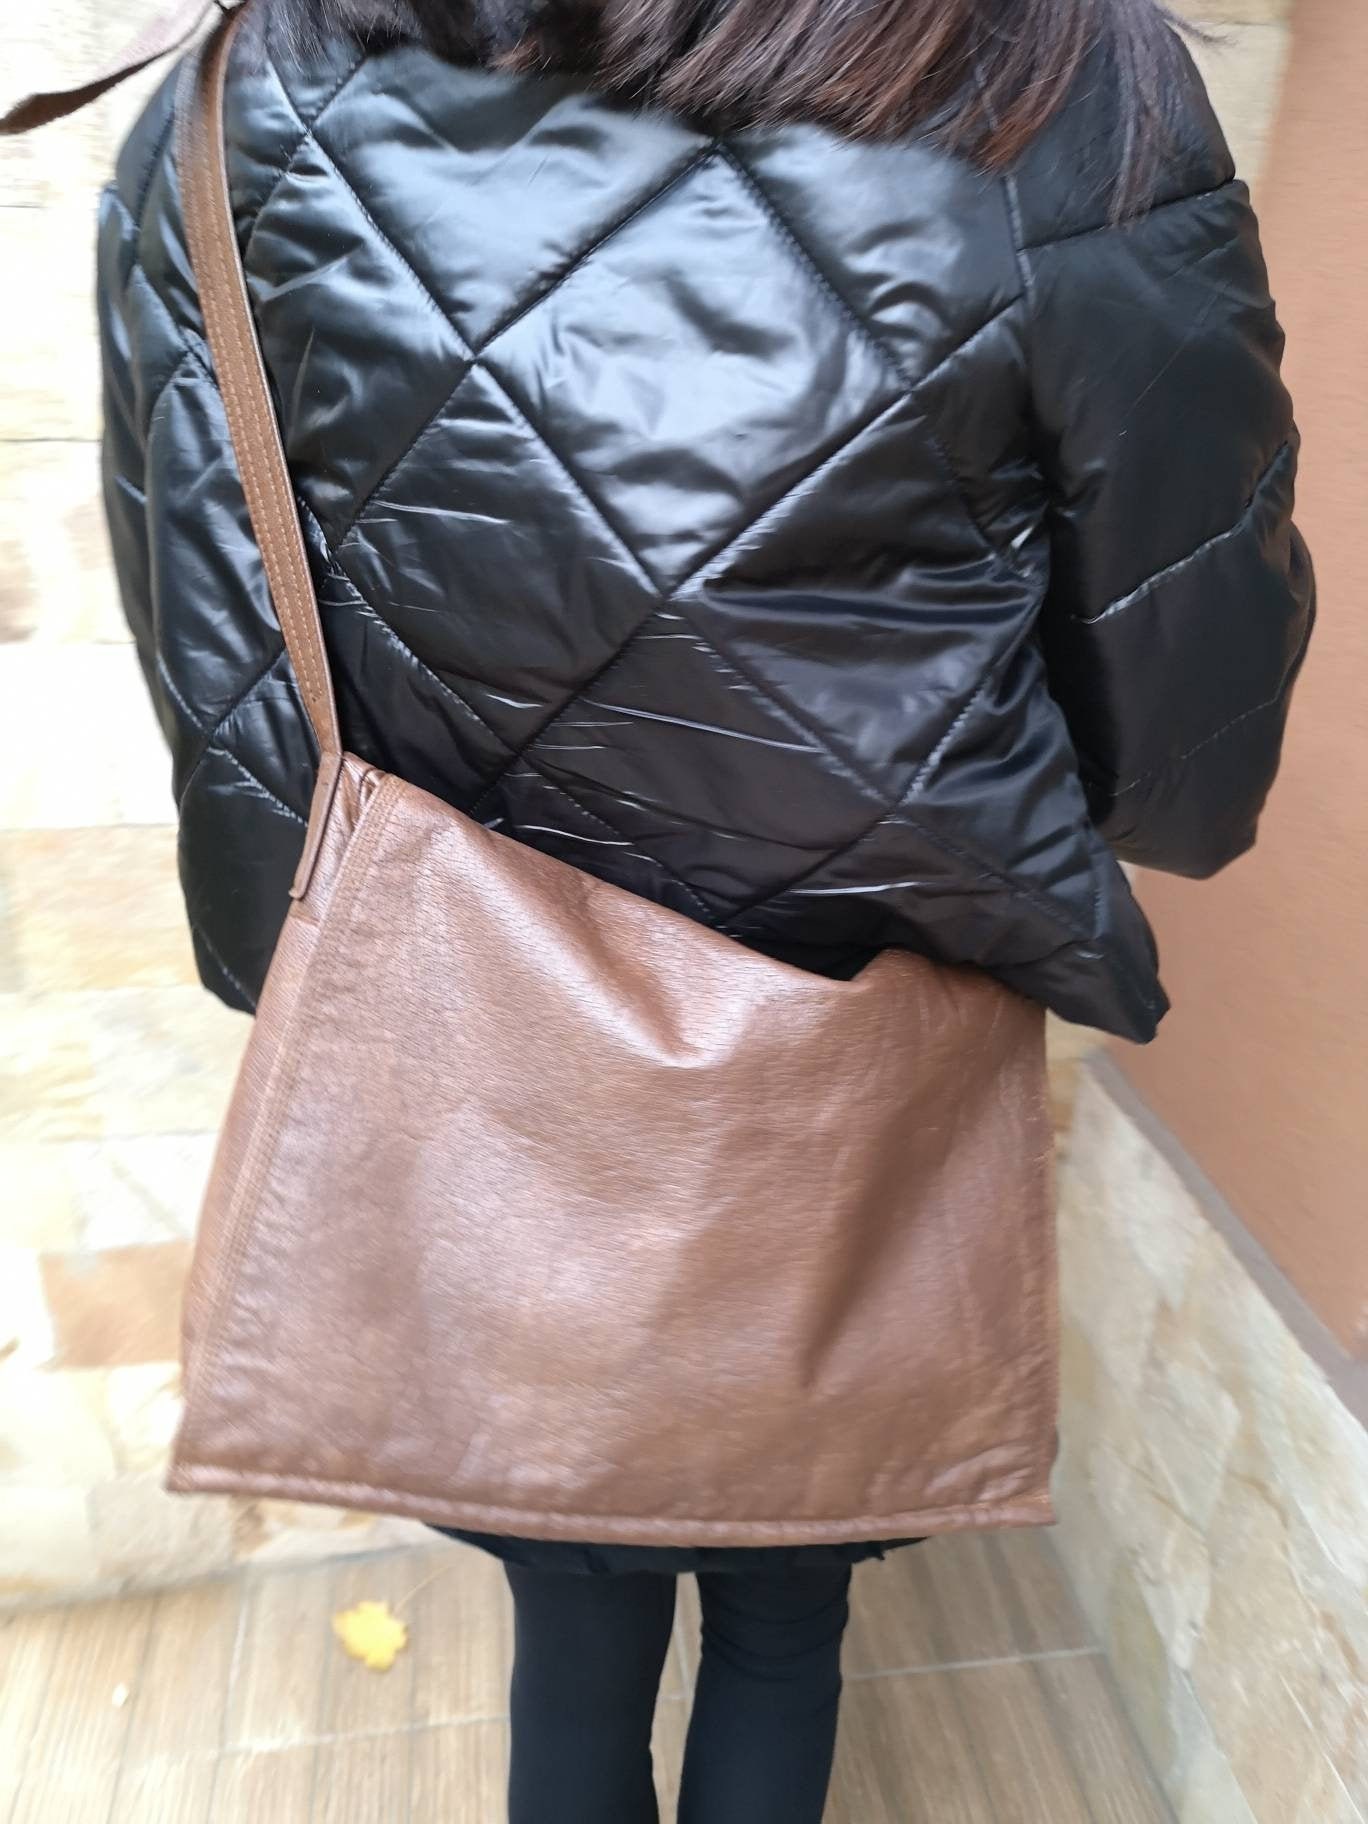 Picard Genuine Leather Shoulder Bag Vintage Leather Shoulder 